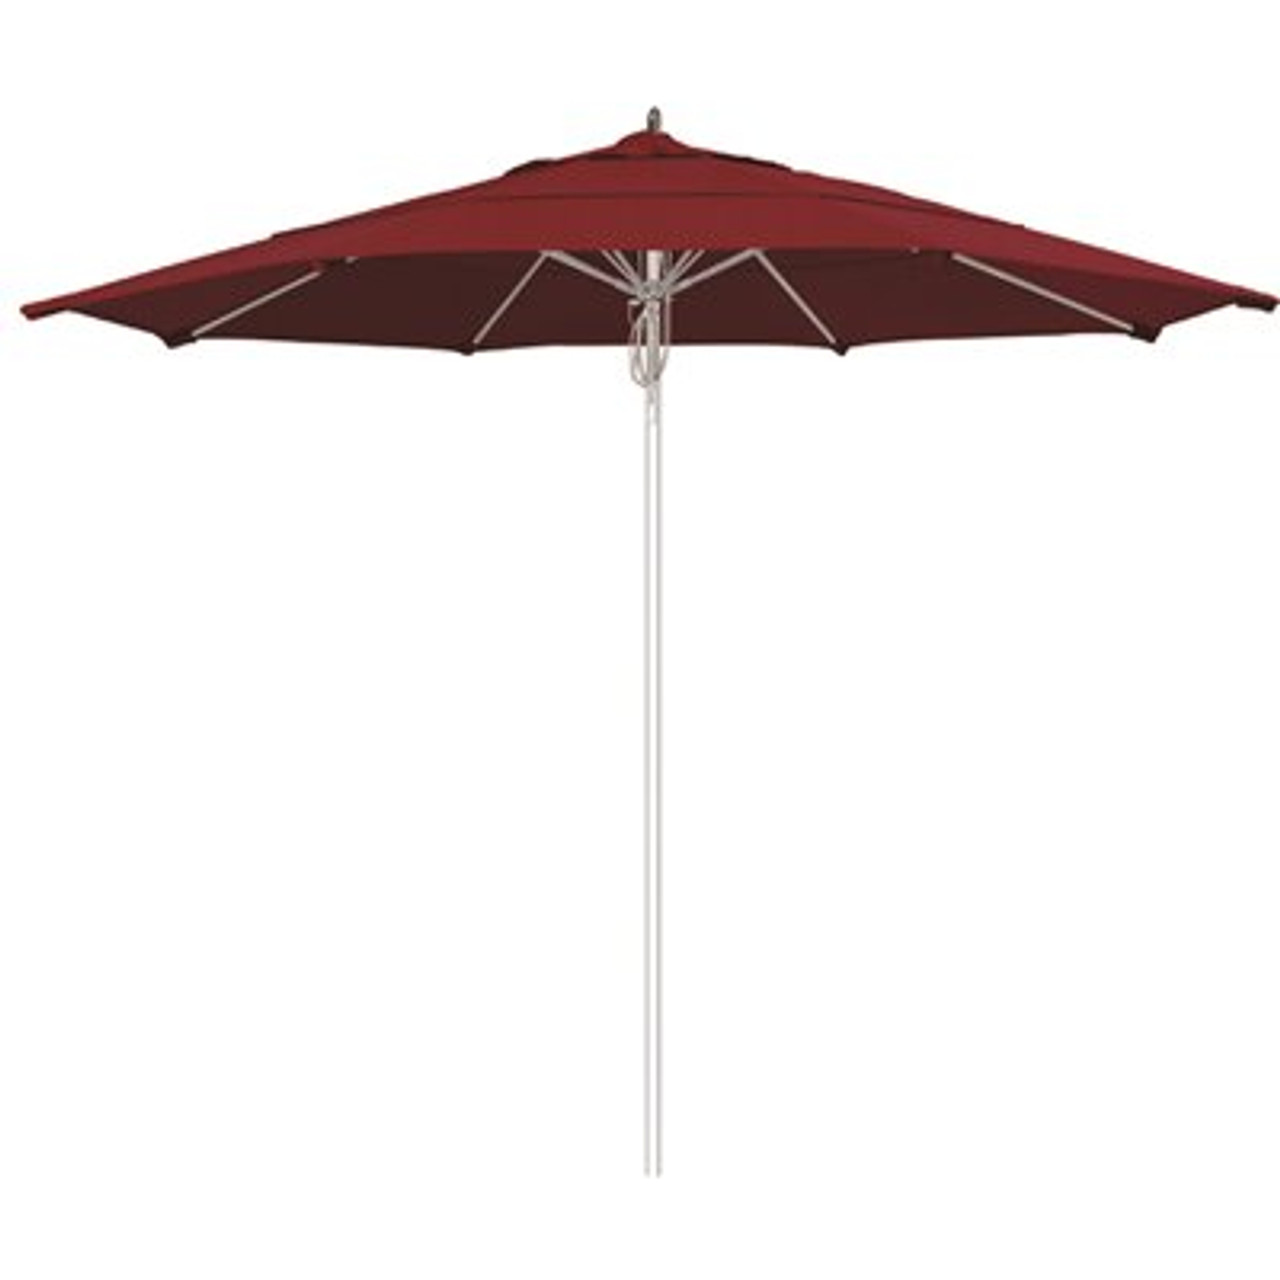 11 ft. Silver Aluminum Commercial Market Patio Umbrella Fiberglass Ribs and Pulley lift in Spectrum Rudy Sunbrella